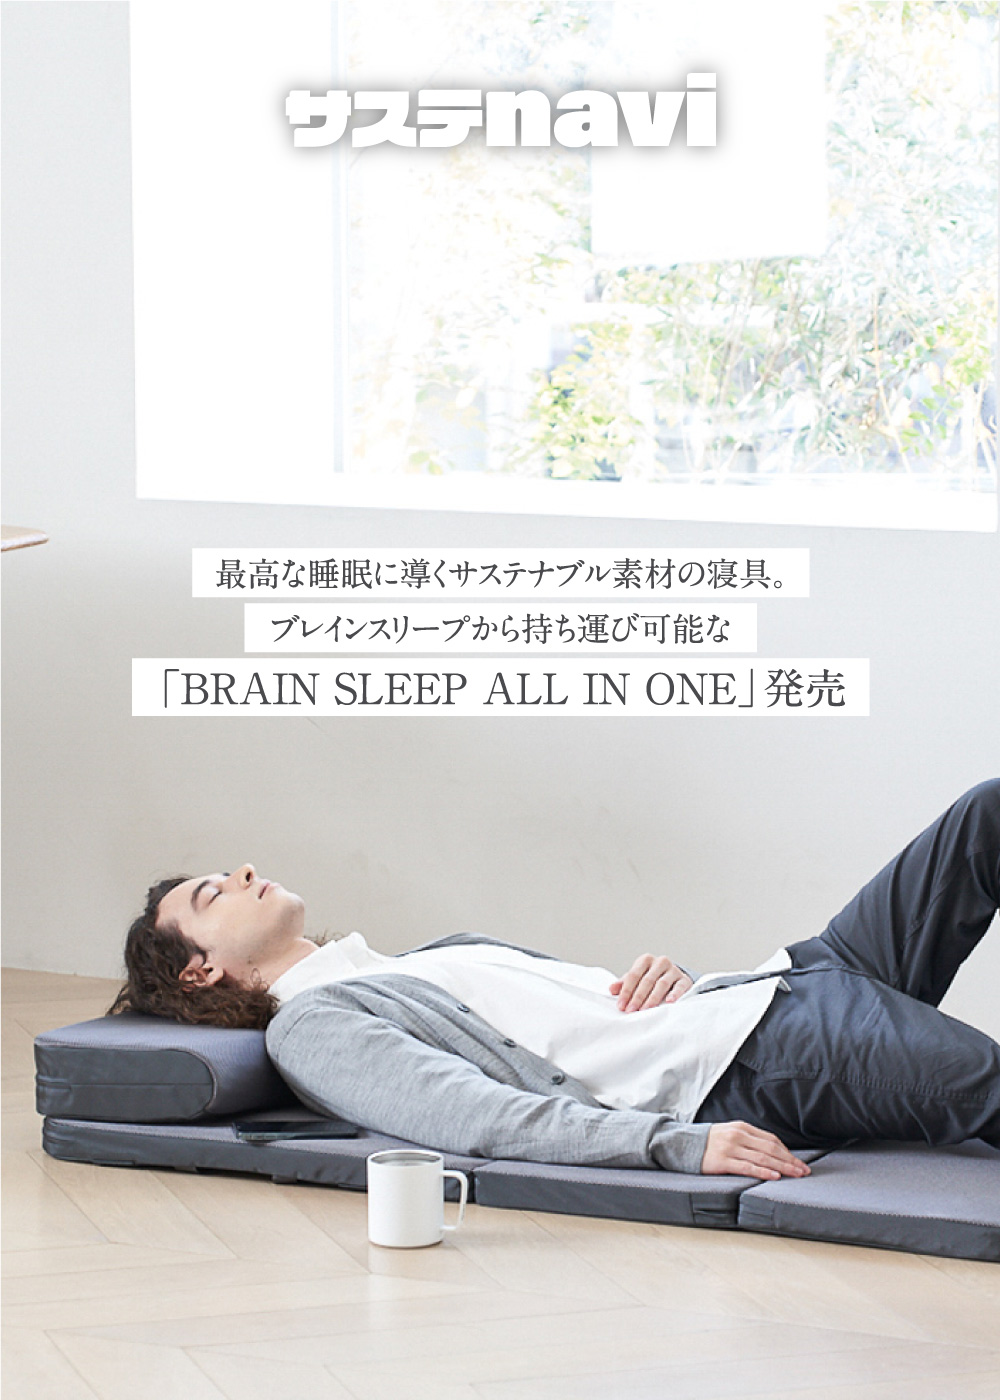 最高な睡眠に導くサステナブル素材の寝具。ブレインスリープから持ち運び可能な「BRAIN SLEEP ALL IN ONE」発売